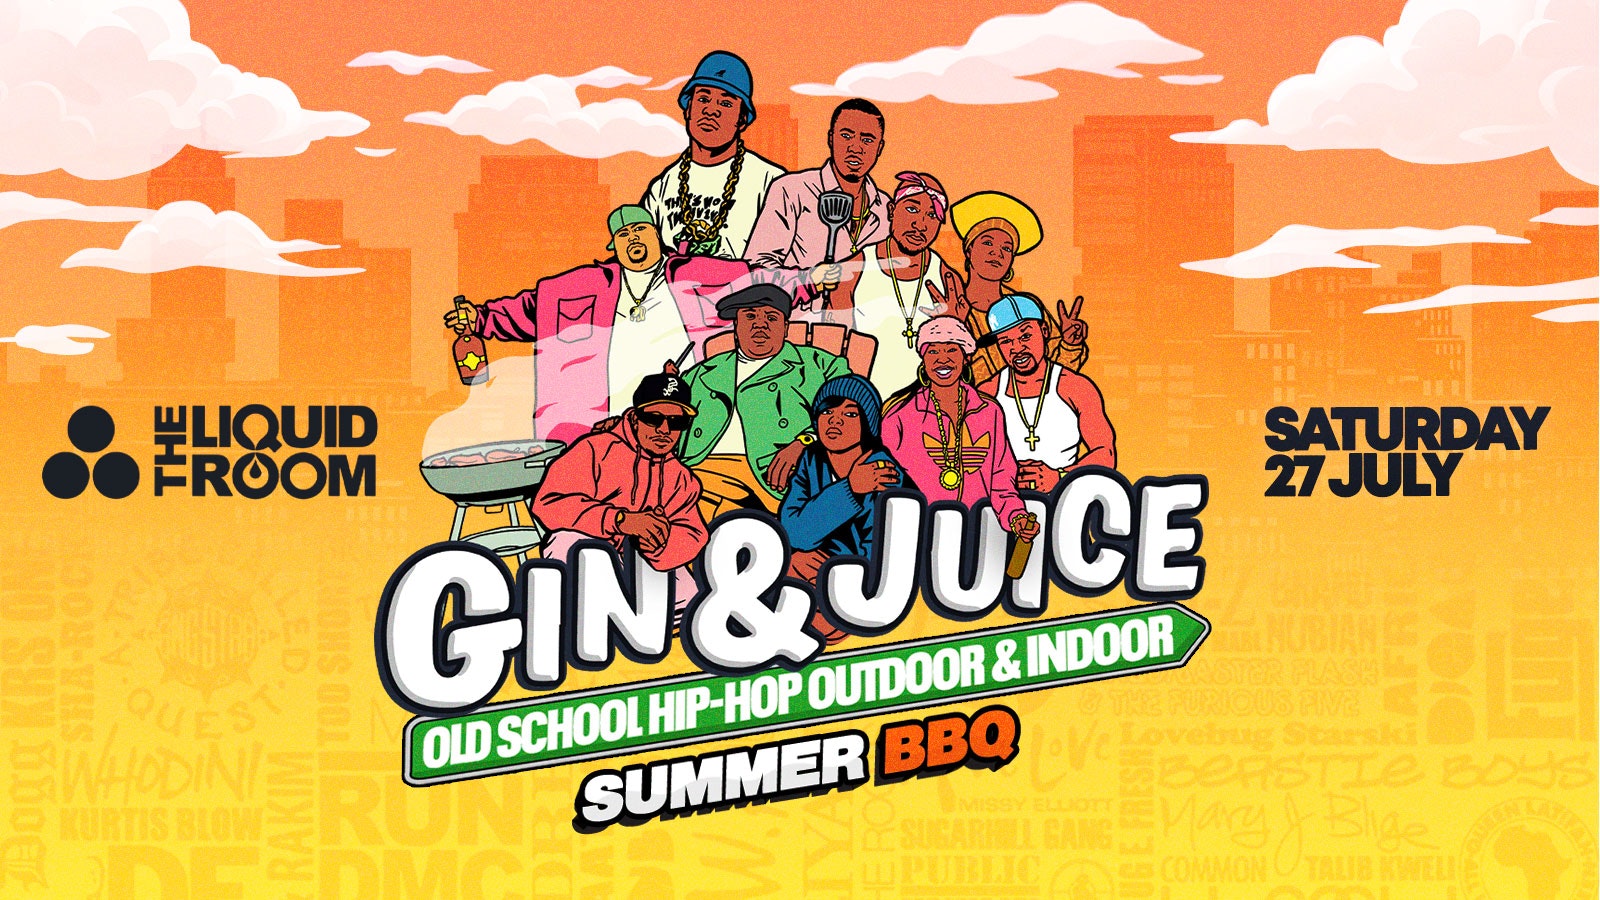 Old School Hip-Hop Outdoor & Indoor Summer BBQ – Edinburgh 2024